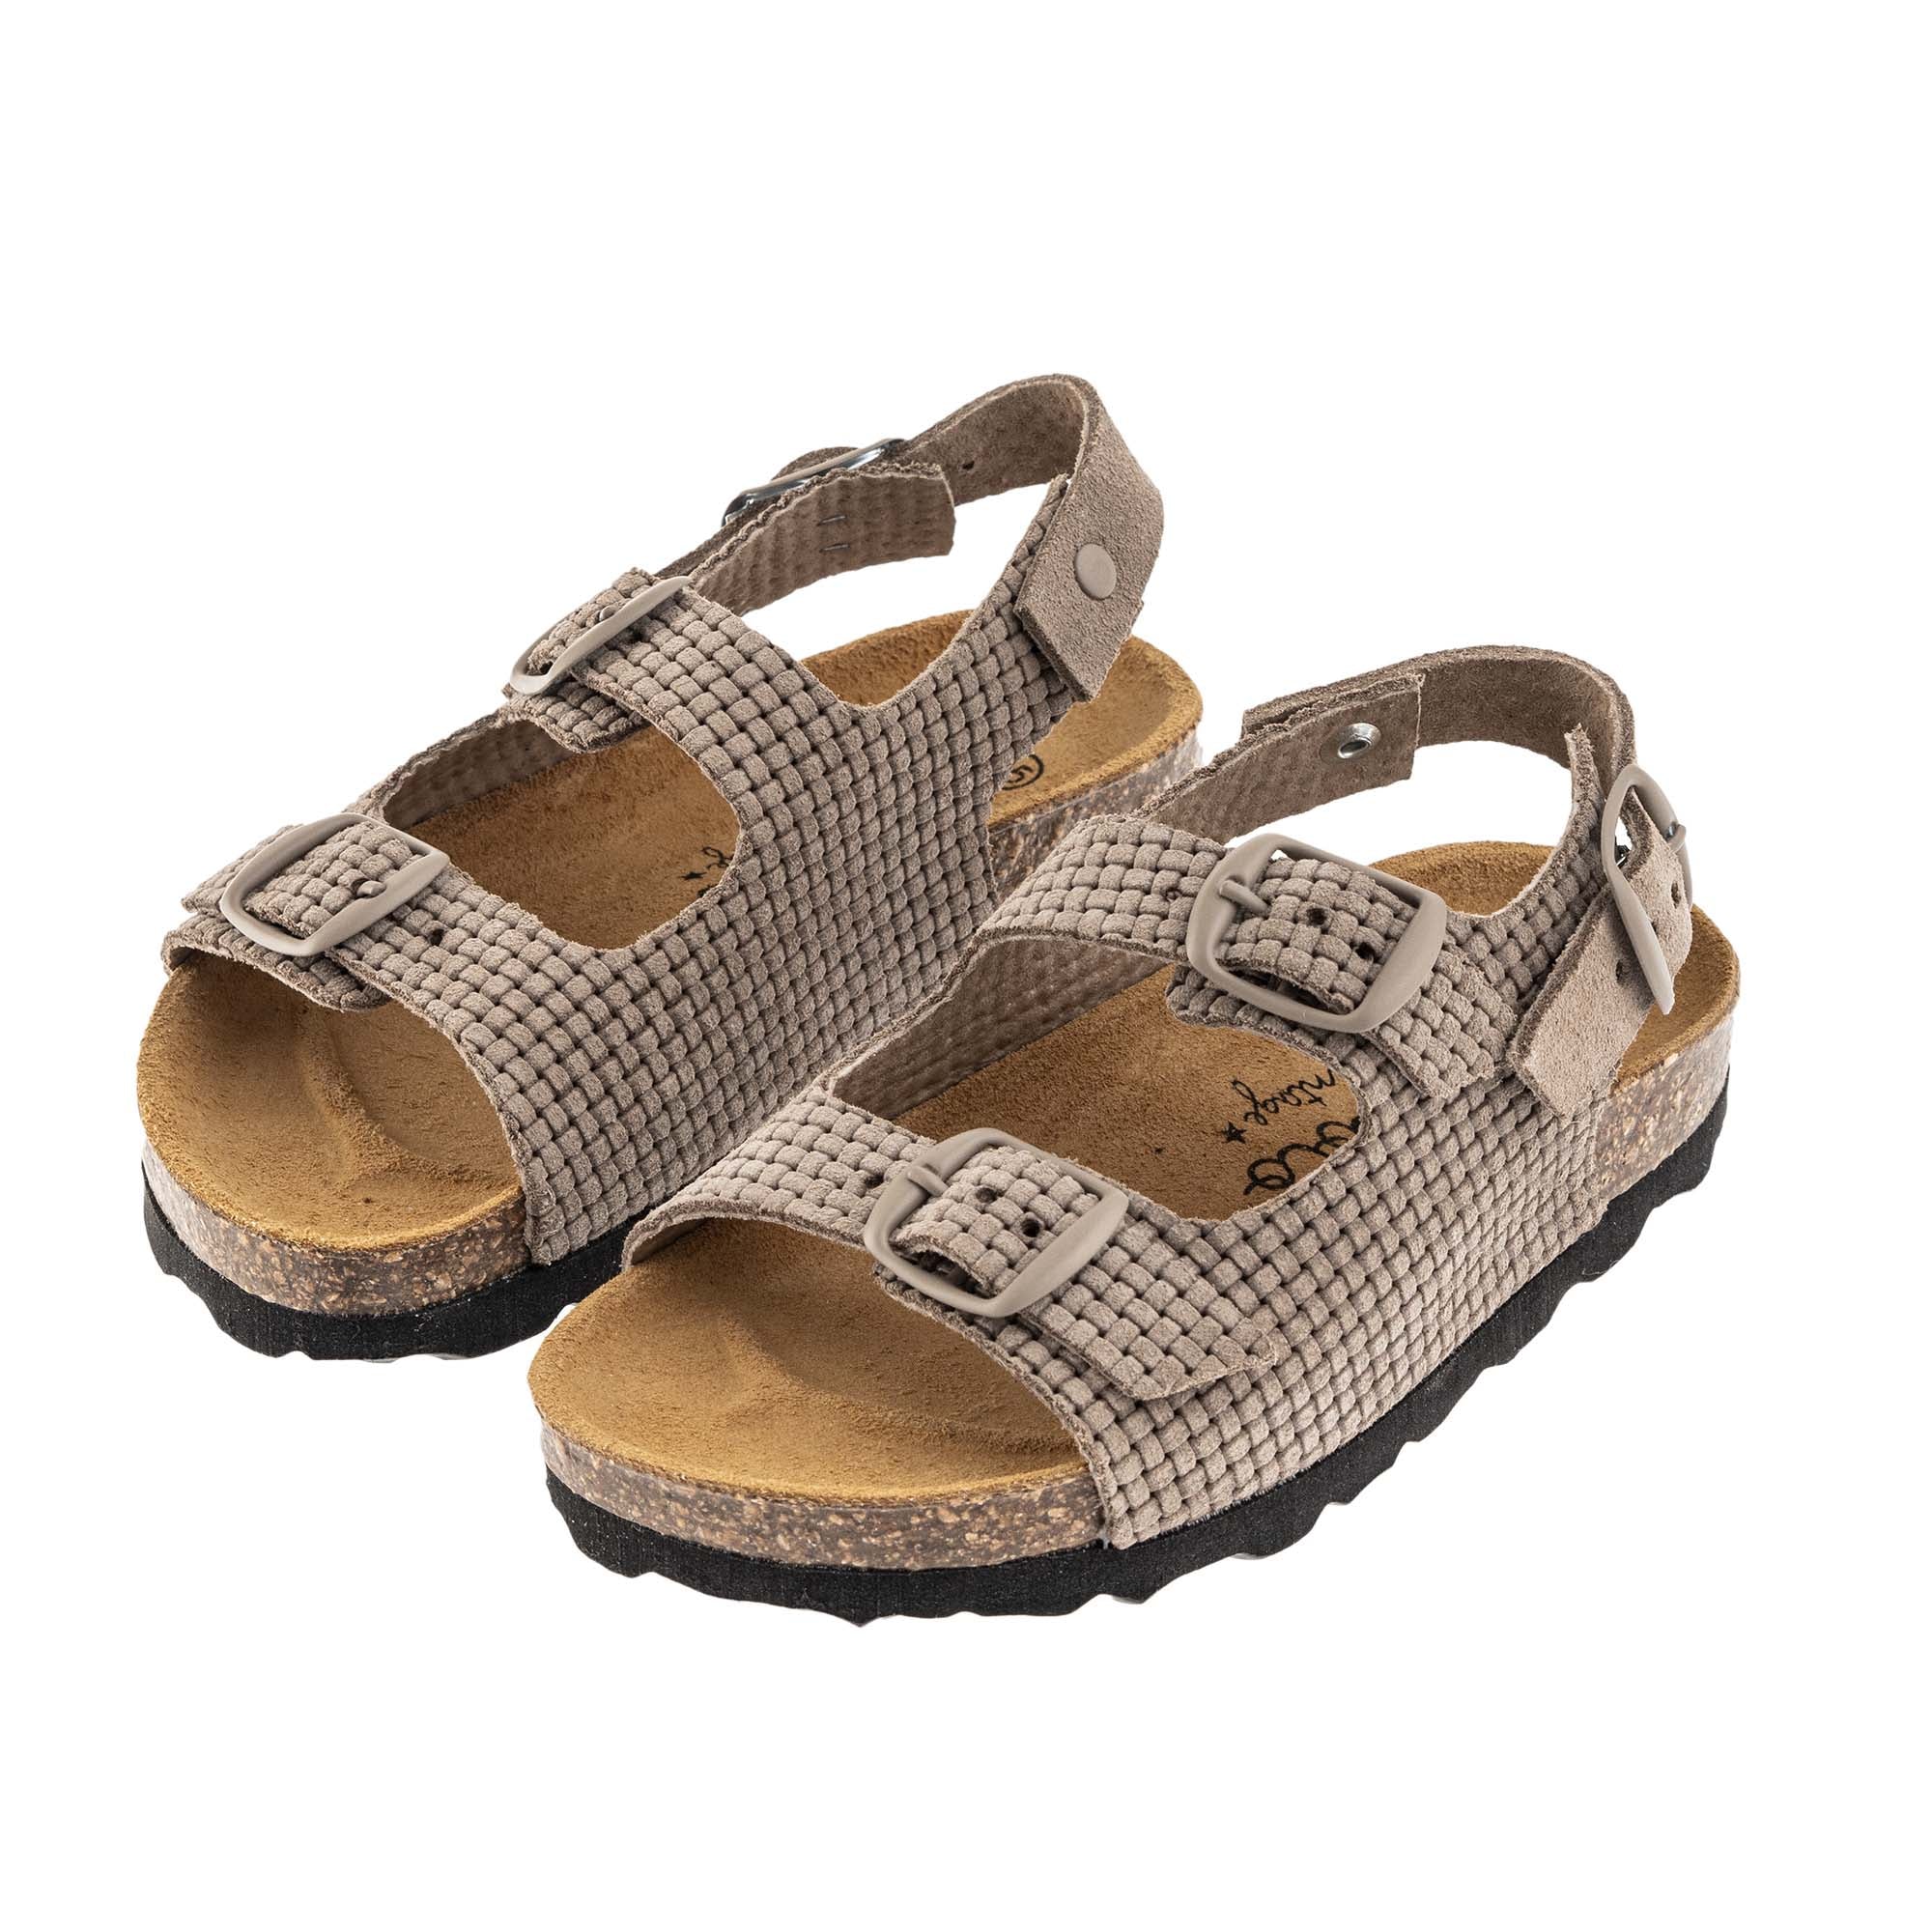 Tocoto Vintage Bio Yute Sandals - Brown